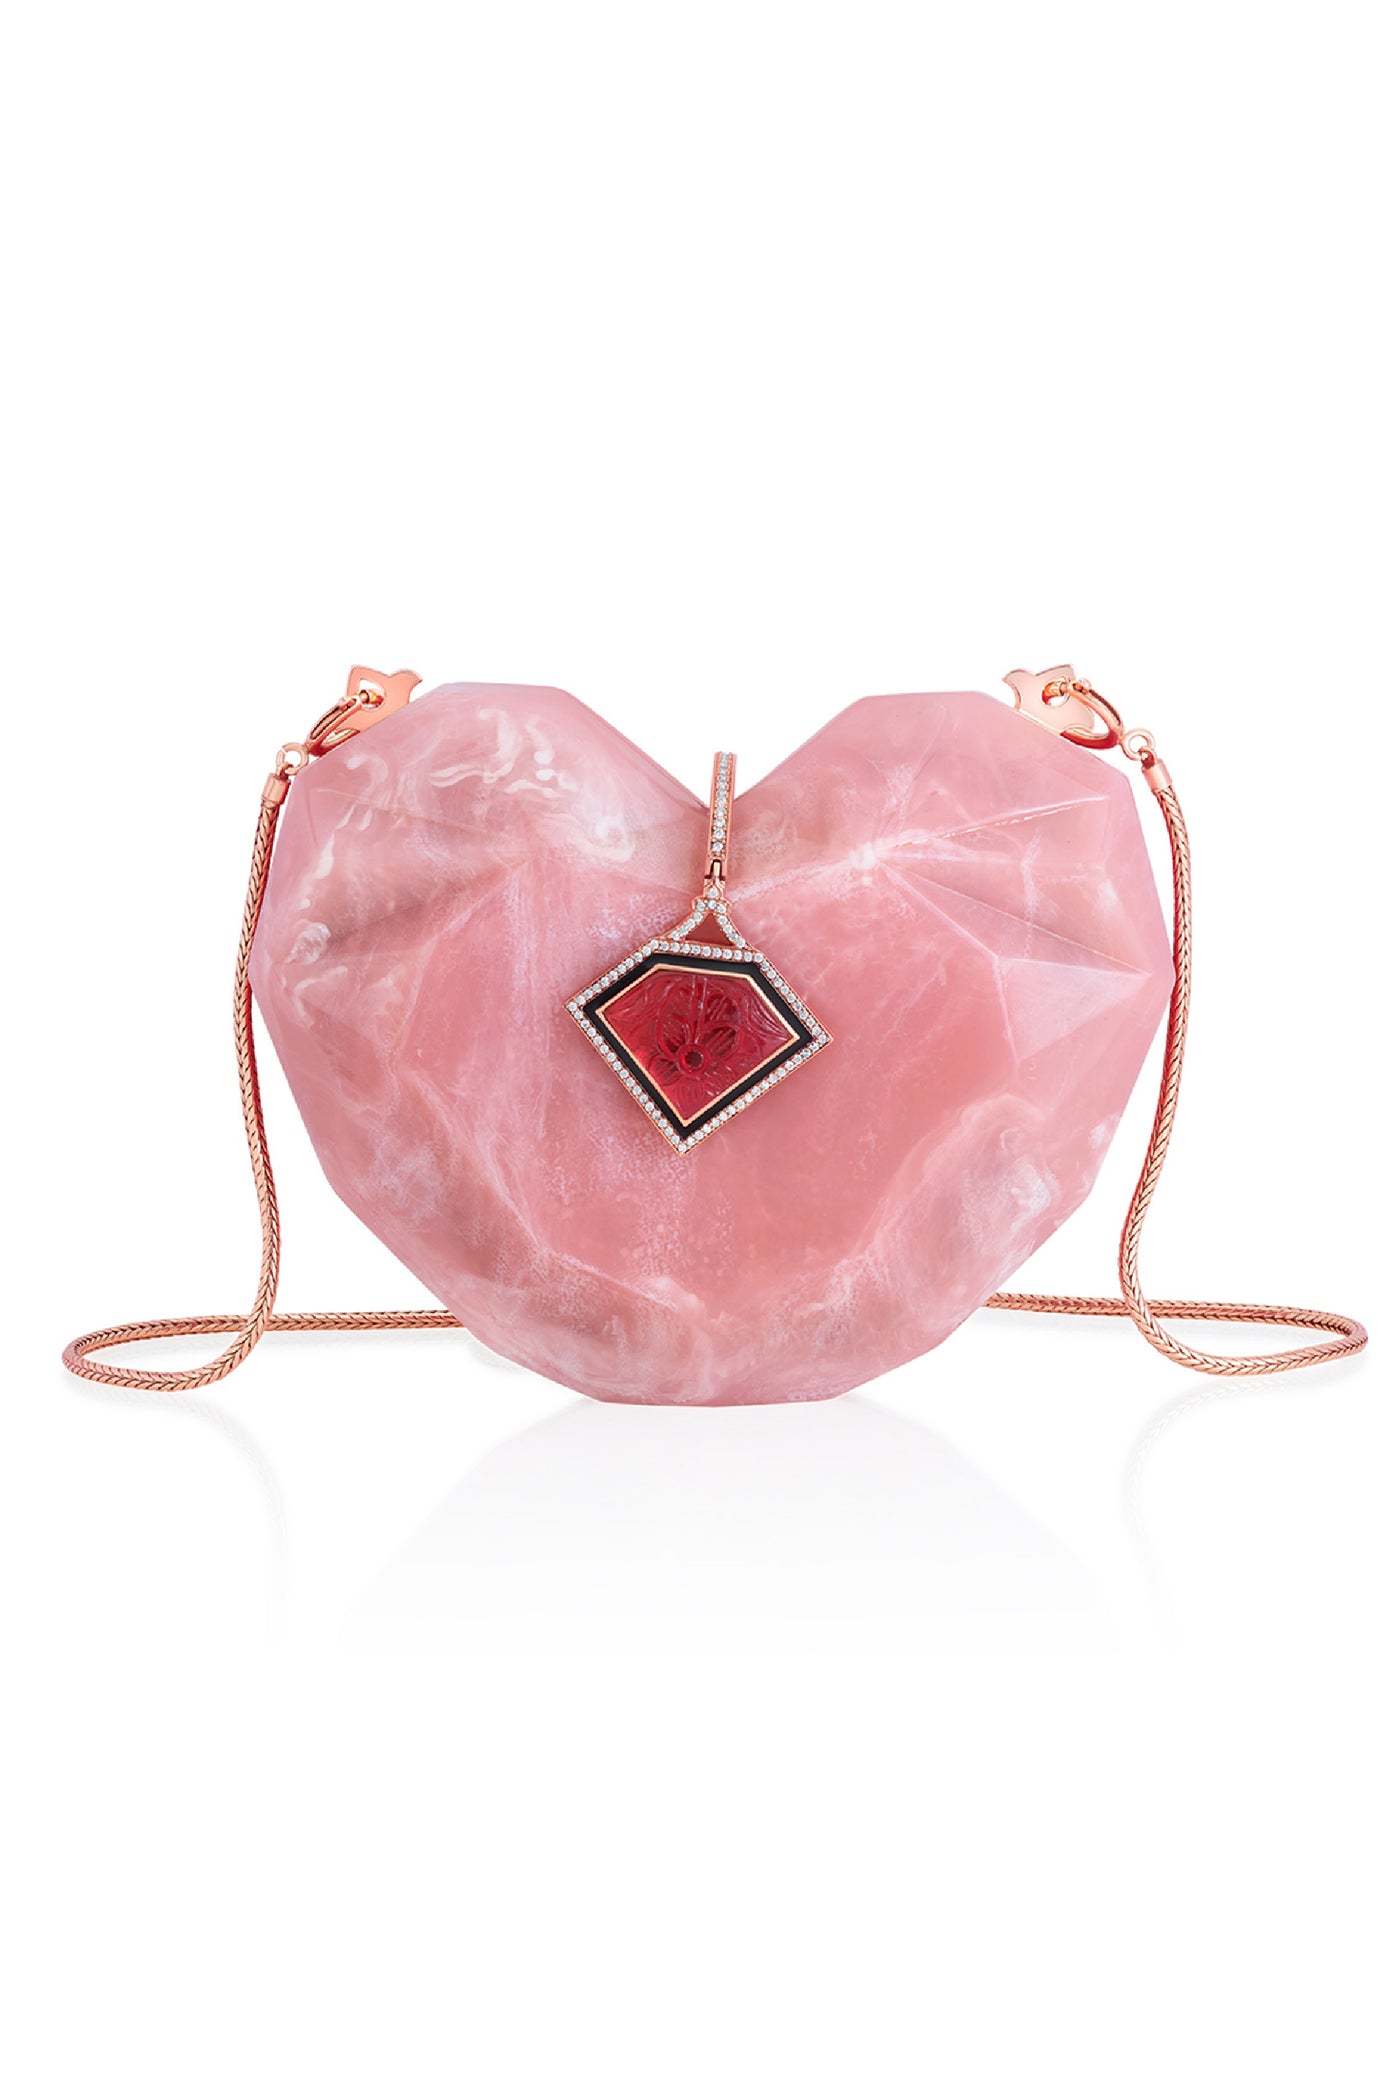 Isharya Rani Pink Heart Minaudière Accesories Indian designer wear online shopping melange singapore